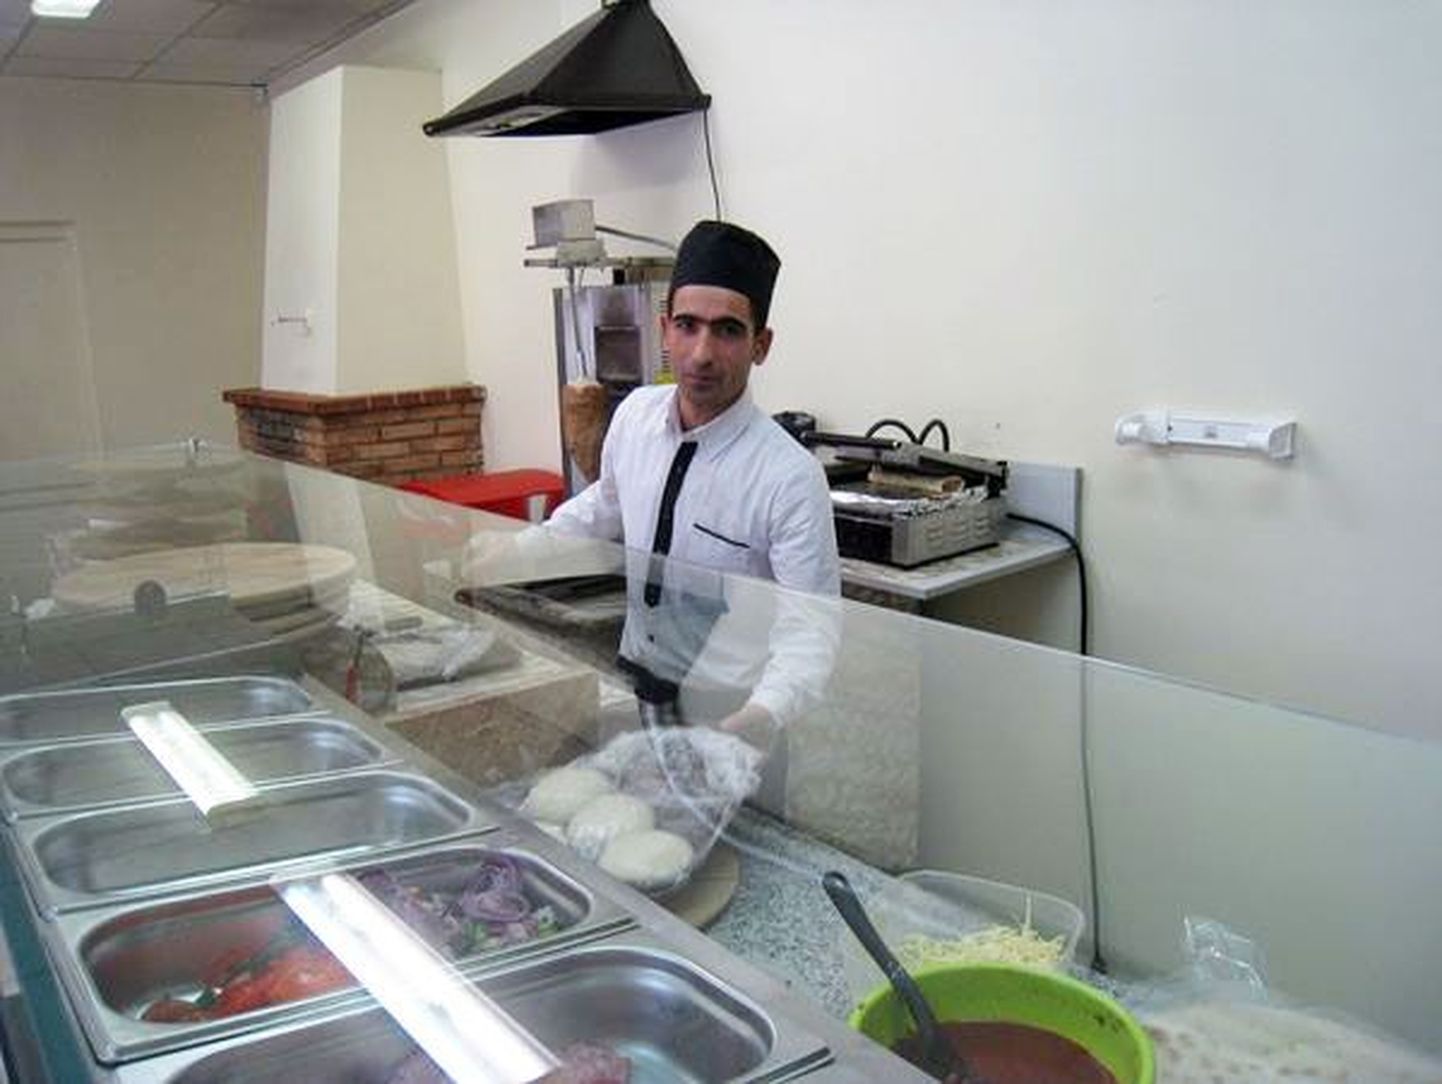 Сириец Азиз сумел выучить литовский и вместе с соотечественником Пьером открыл в Вильнюсе закусочную.